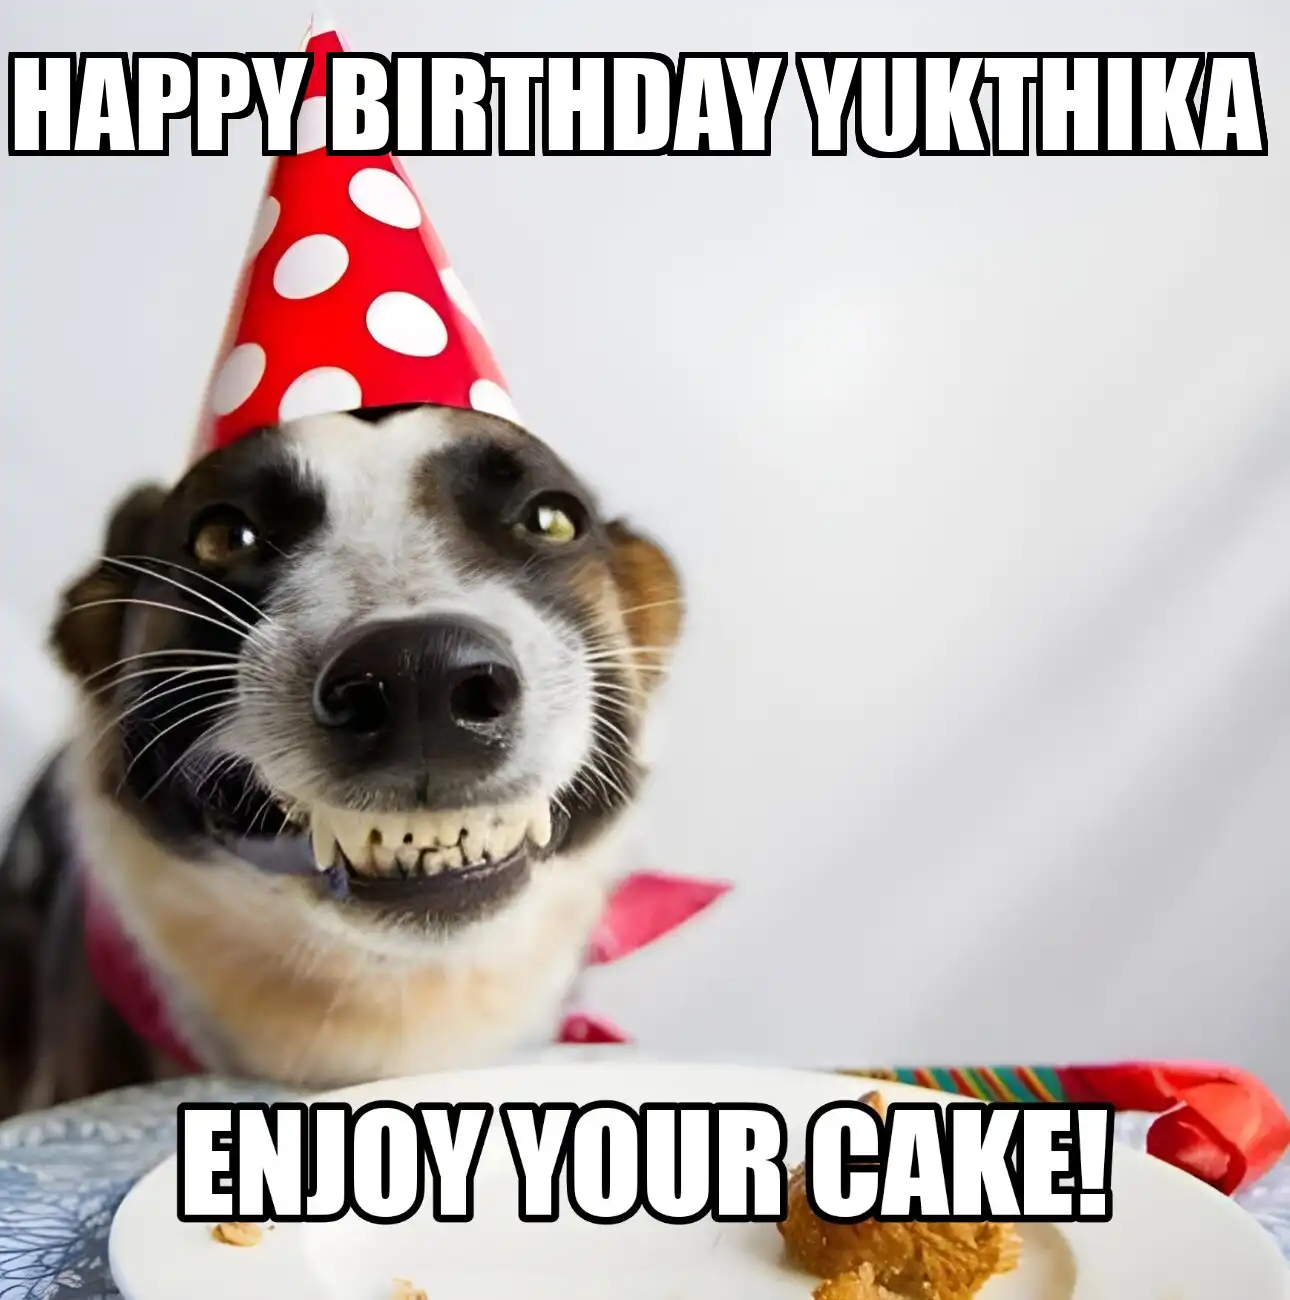 Happy Birthday Yukthika Enjoy Your Cake Dog Meme